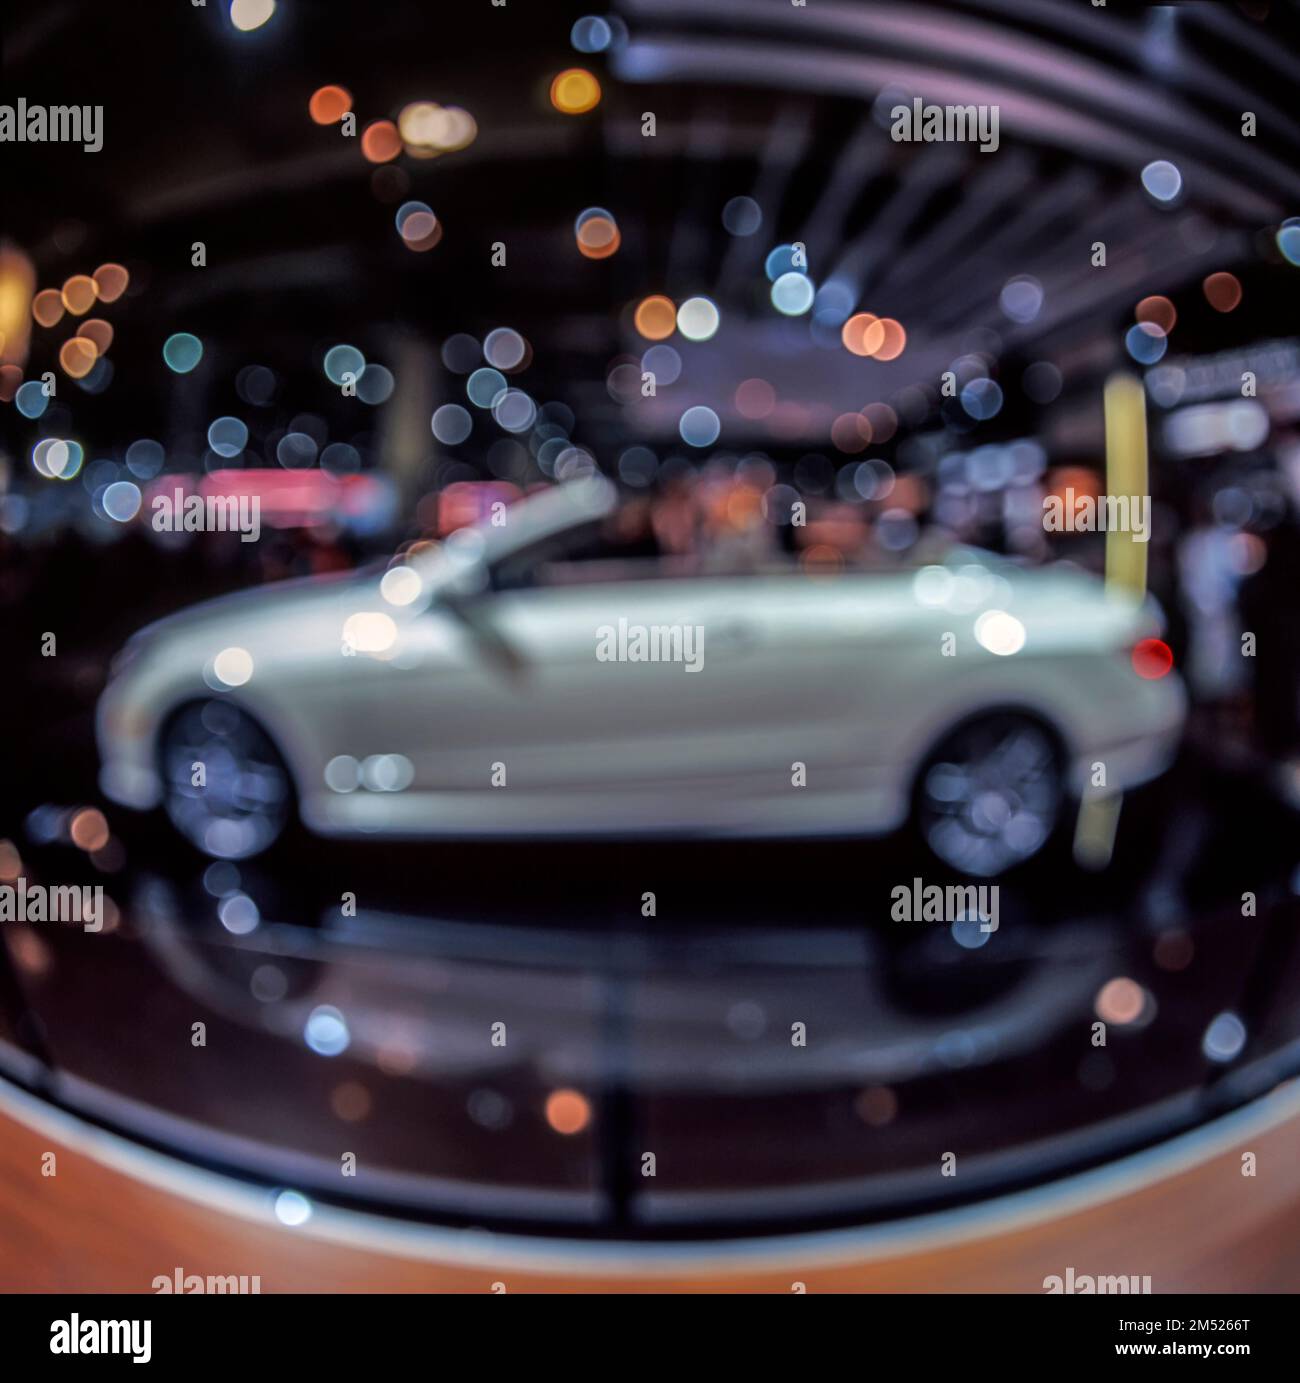 Imagen borrosa y desenfocada de un automóvil tomada con una cámara de película de formato medio con lente de ojo de pez Foto de stock